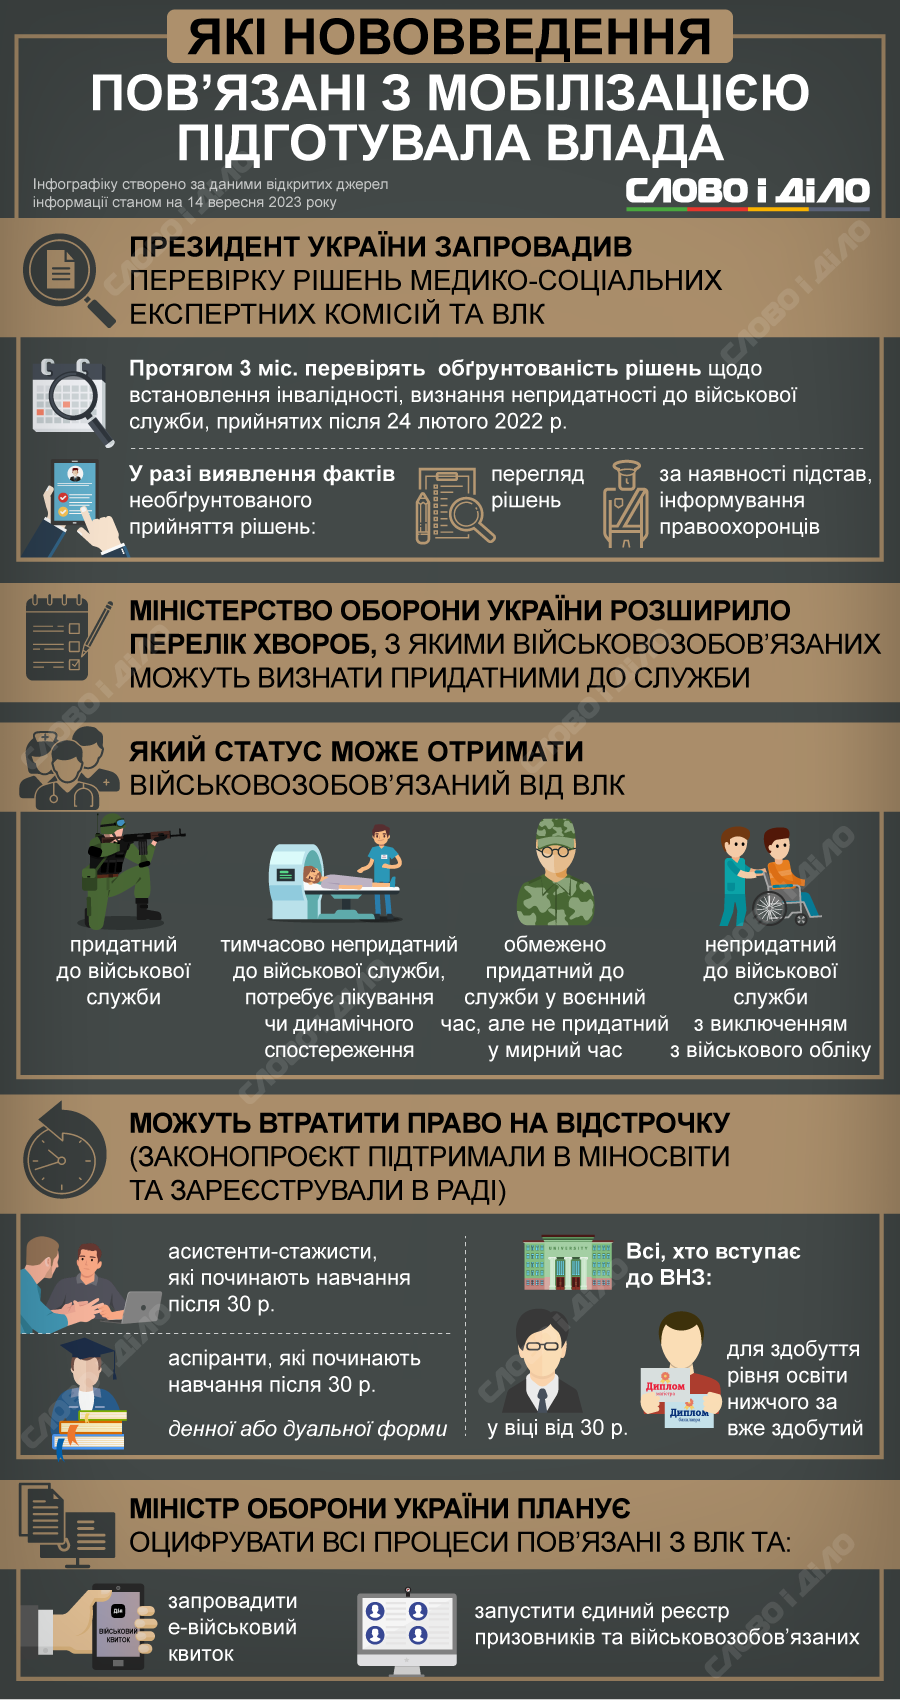 Хто не підлягає мобілізації в Україні 2023 року за станом здоров'я?